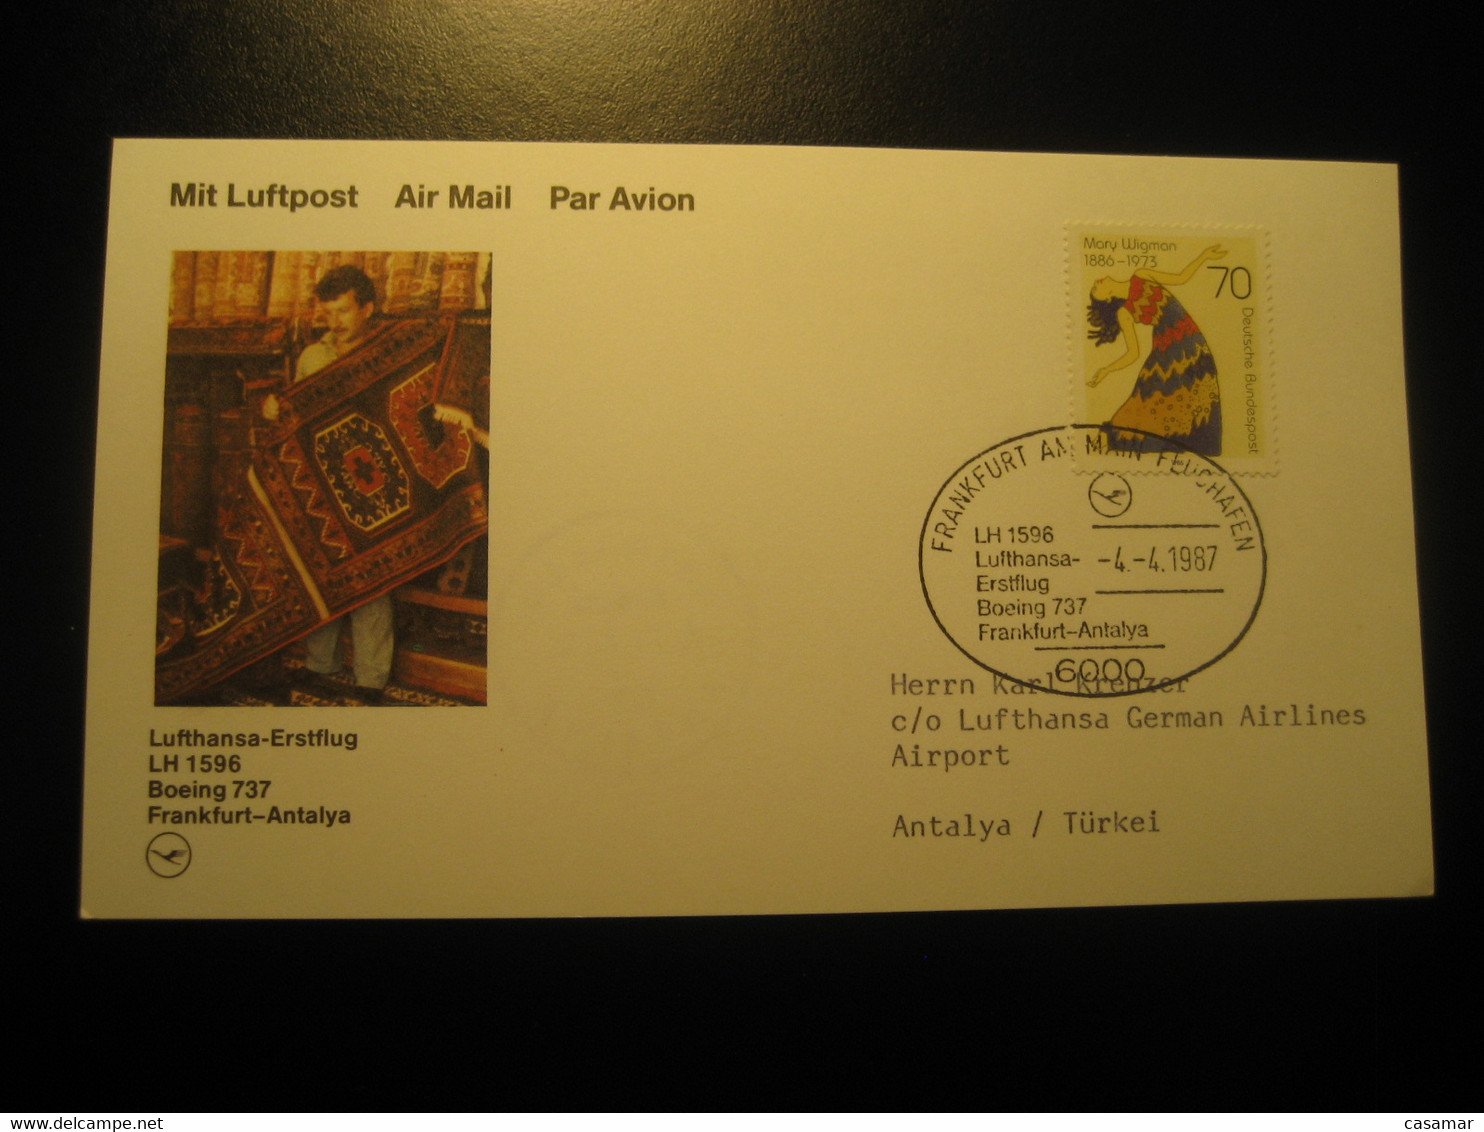 Frankfurt Antalya 1987 Lufthansa Airline Boeing 737 First Flight Stamp Cancel Card Turkey Germany - Airmail